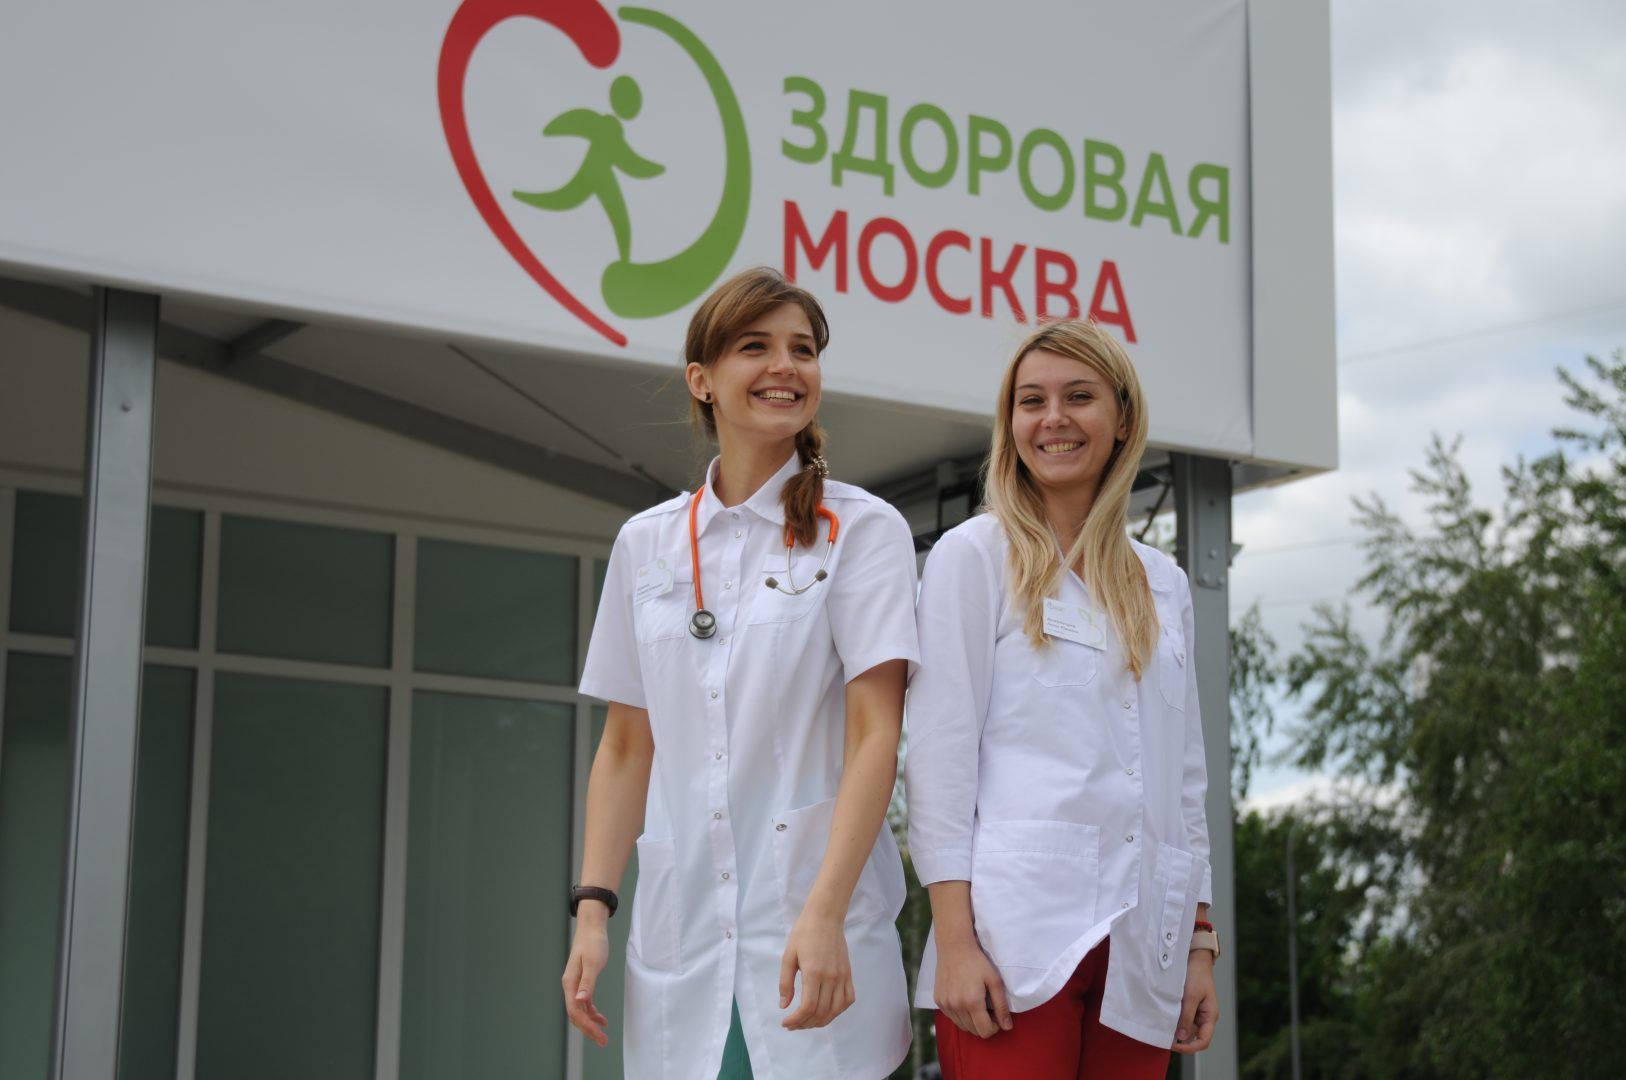 Всего в городе открыто 24 пункта «Здоровая Москва». Фото: Светлана Колоскова